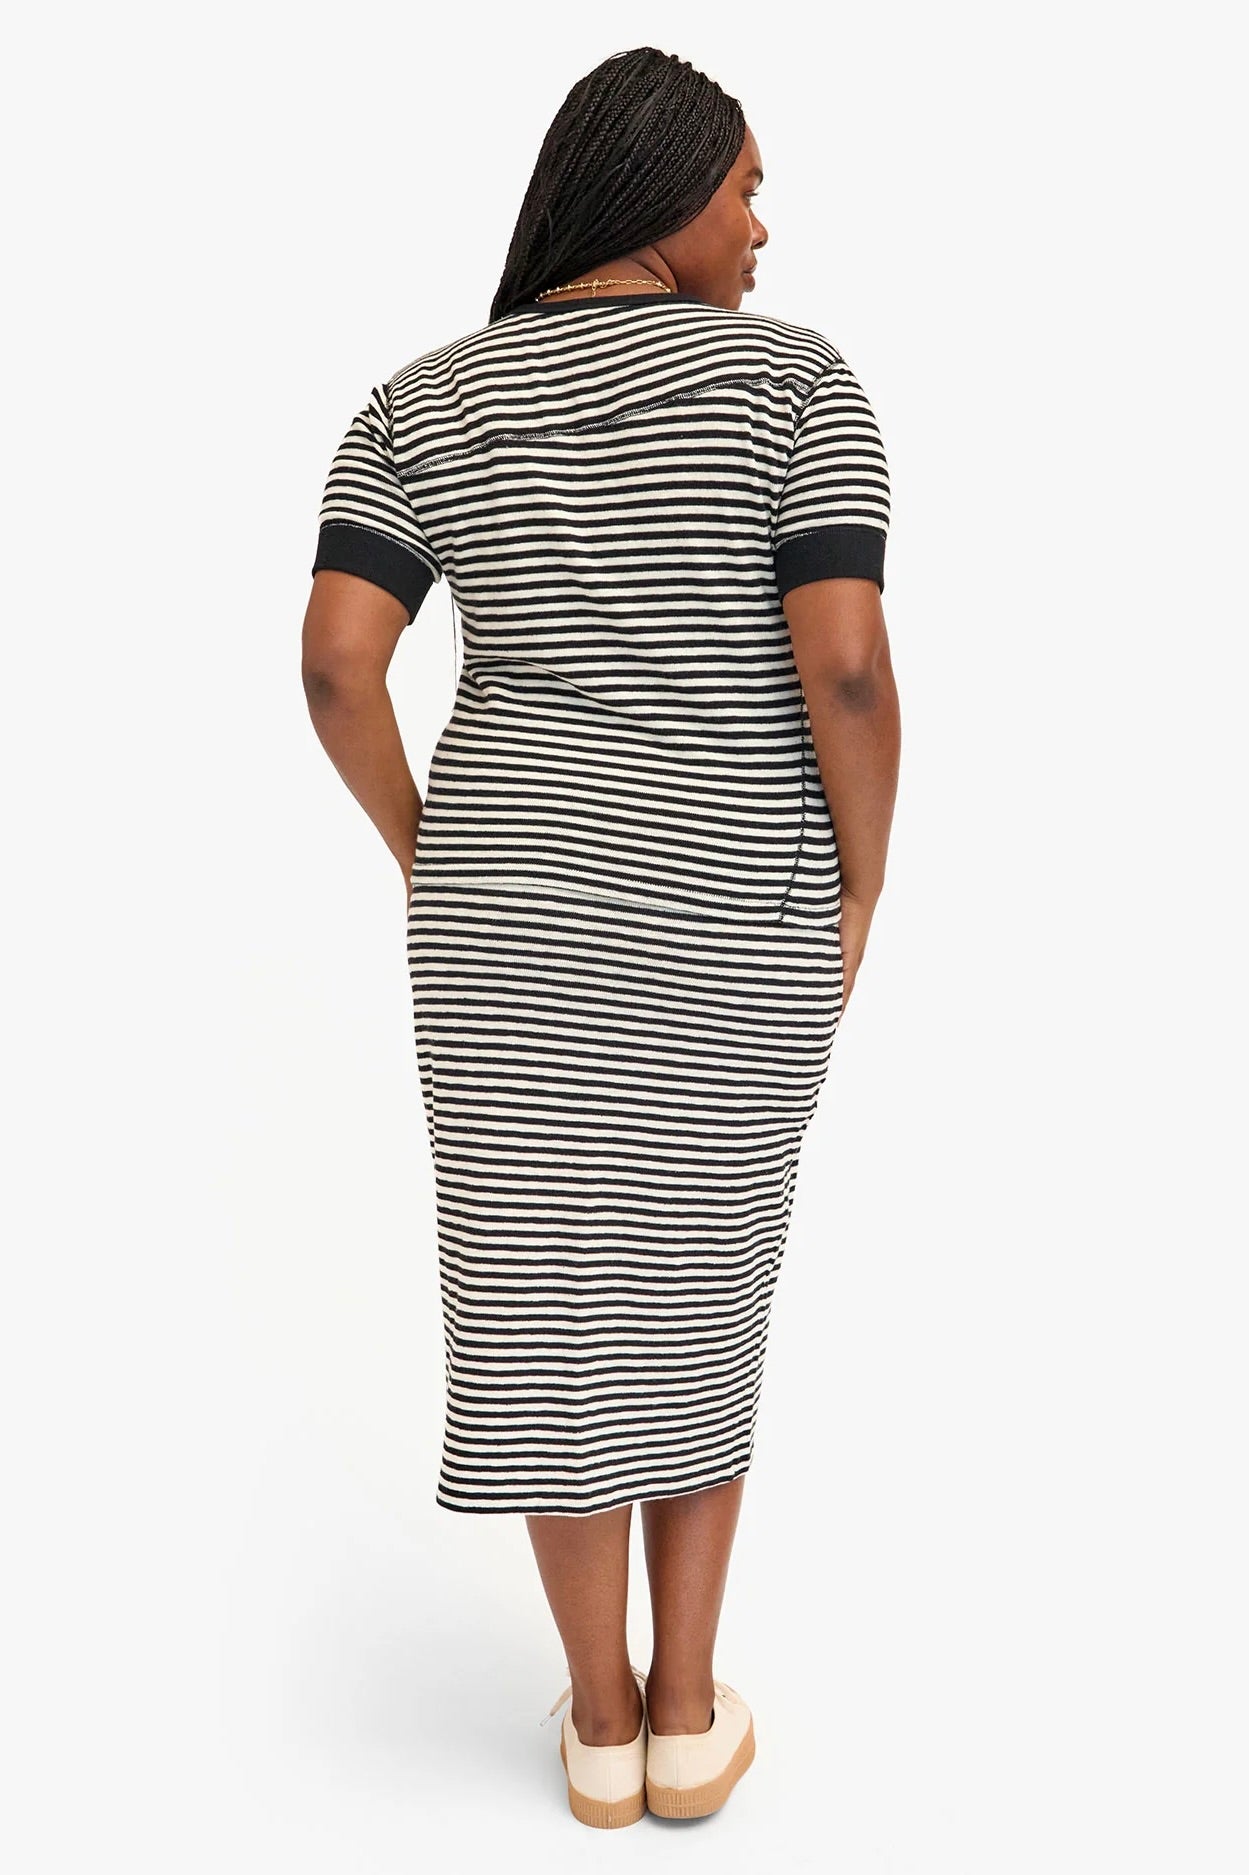 Clare V Le Tube Skirt / Black+Cream Stripe